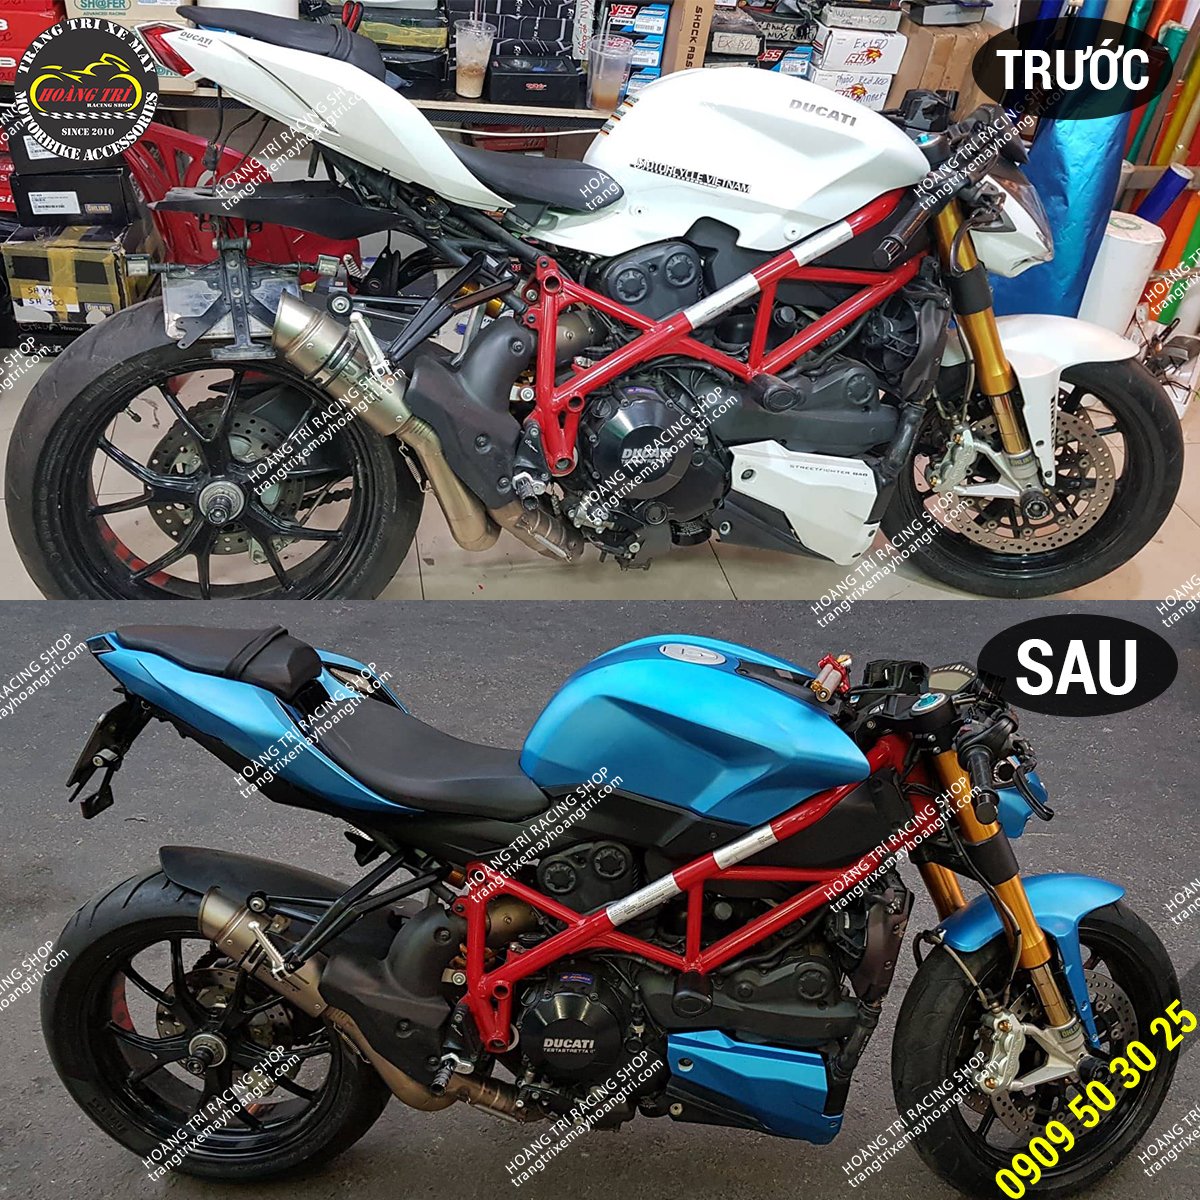 Hình ảnh trước và sau khi dán decal nhôm xước Ducati